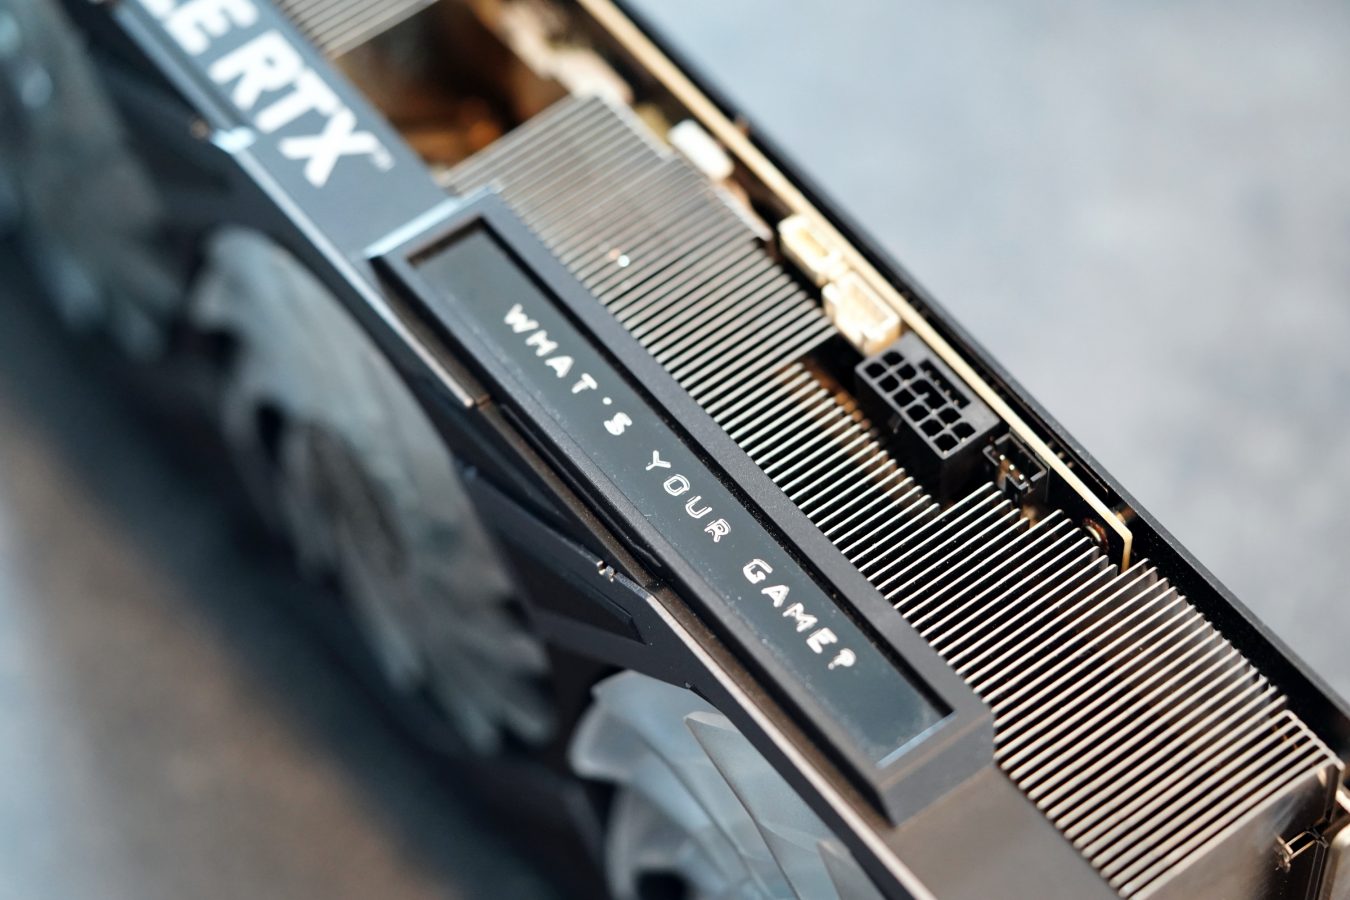 KFA2 GeForce RTX 3090 Ti EX Gamer